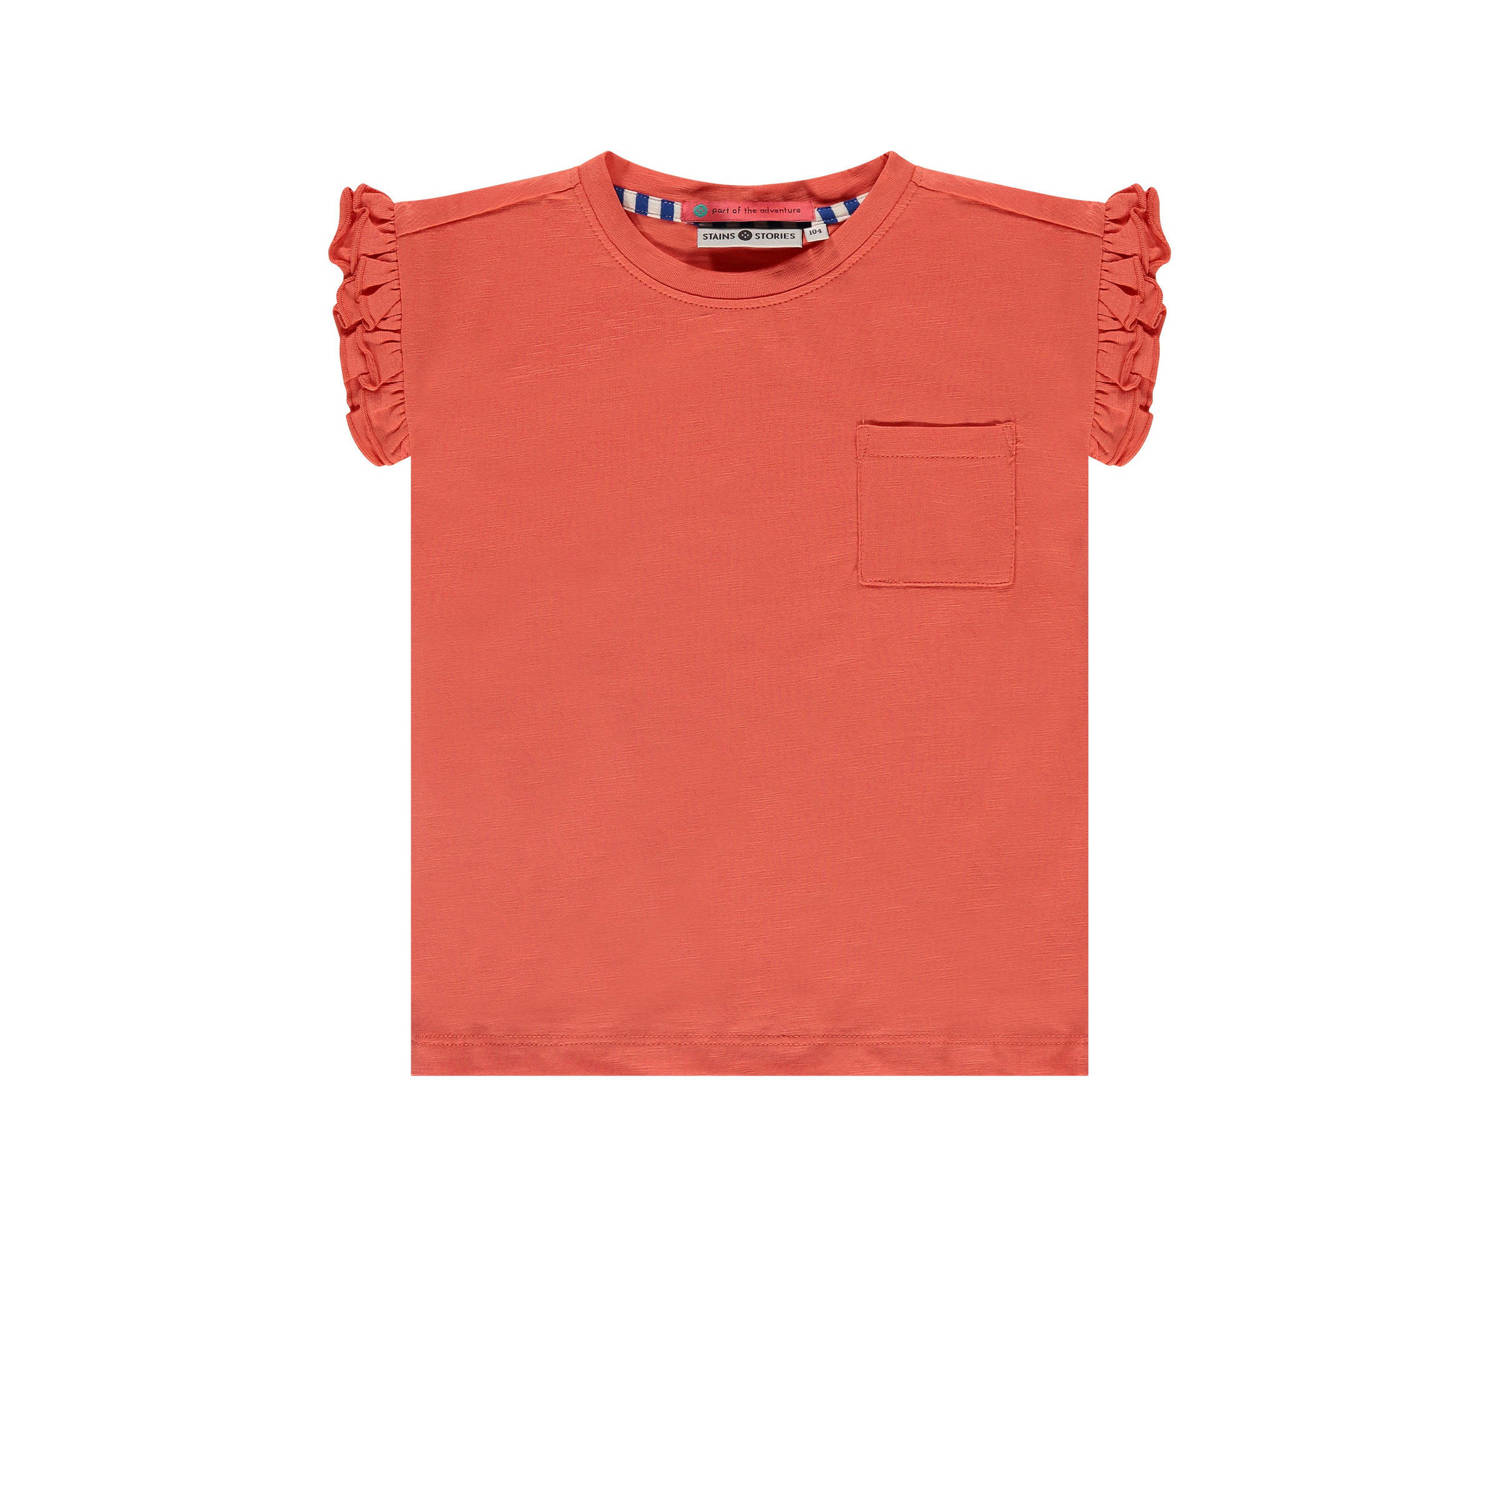 Stains&Stories T-shirt oranje Meisjes Stretchkatoen Ronde hals Effen 104